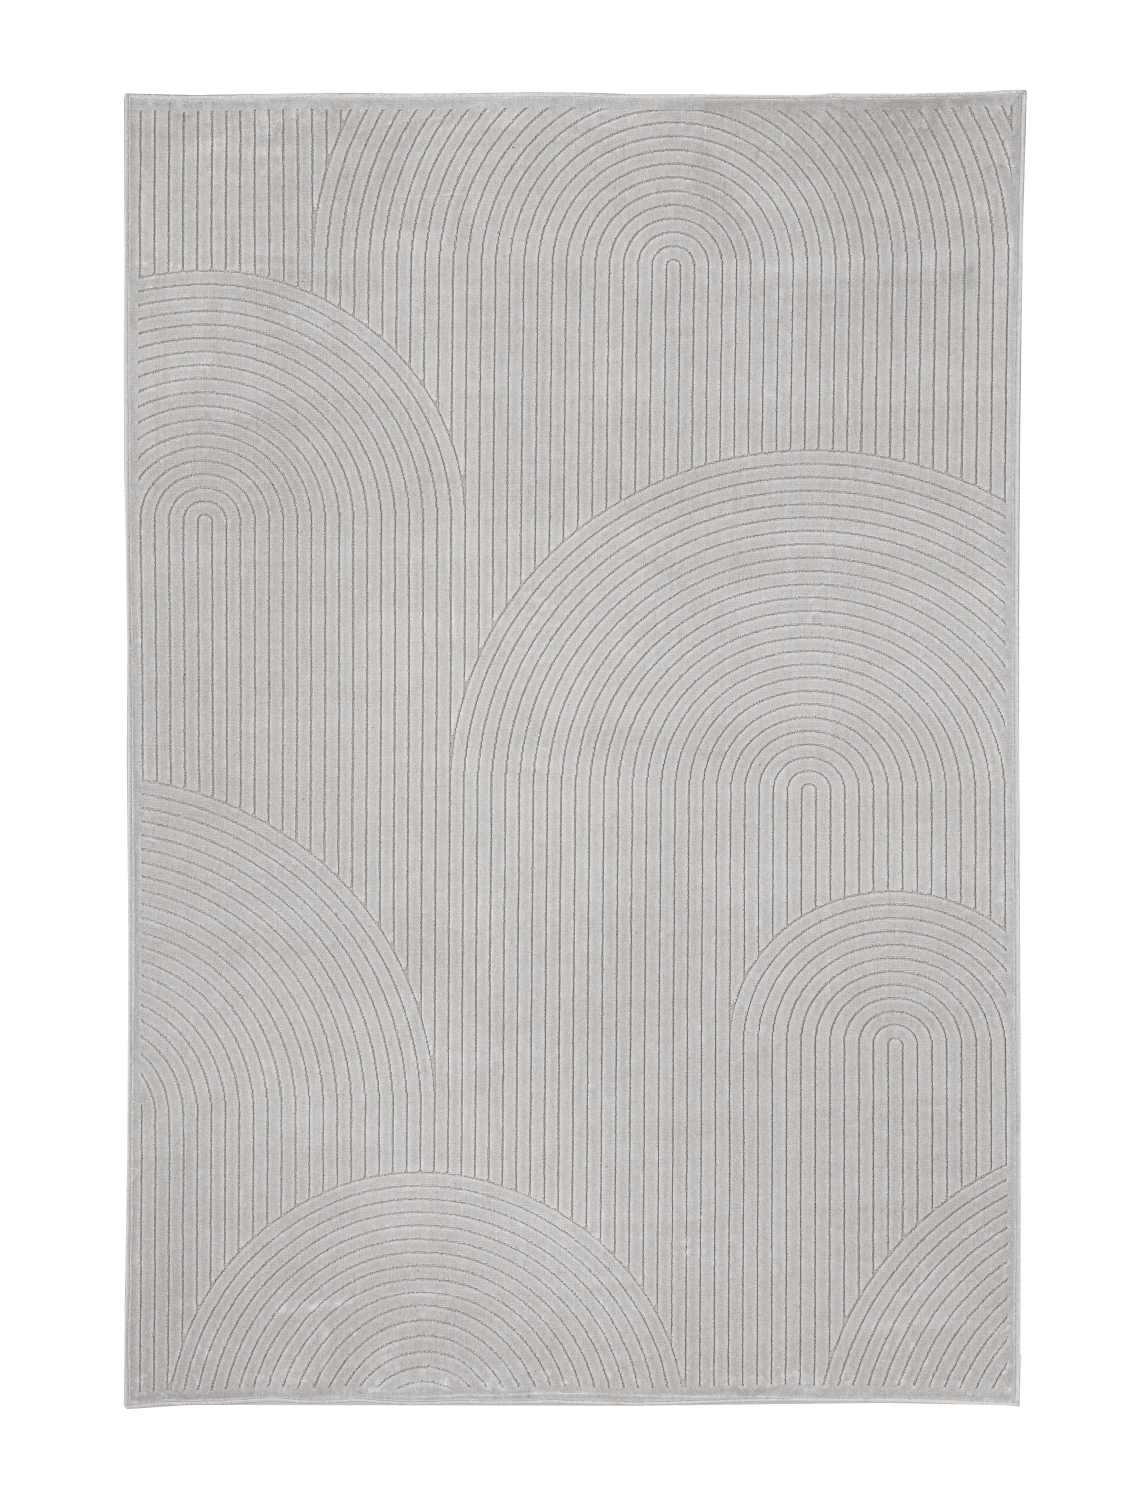 Der Teppich Klab überzeugt mit seinem modernen Design. Gefertigt wurde die Vorderseite aus Viskose, Chenille und Fleece, die Rückseite ist aus Latex. Der Teppich besitzt eine hellgrauen Farbton und die Maße von 160x230 cm.